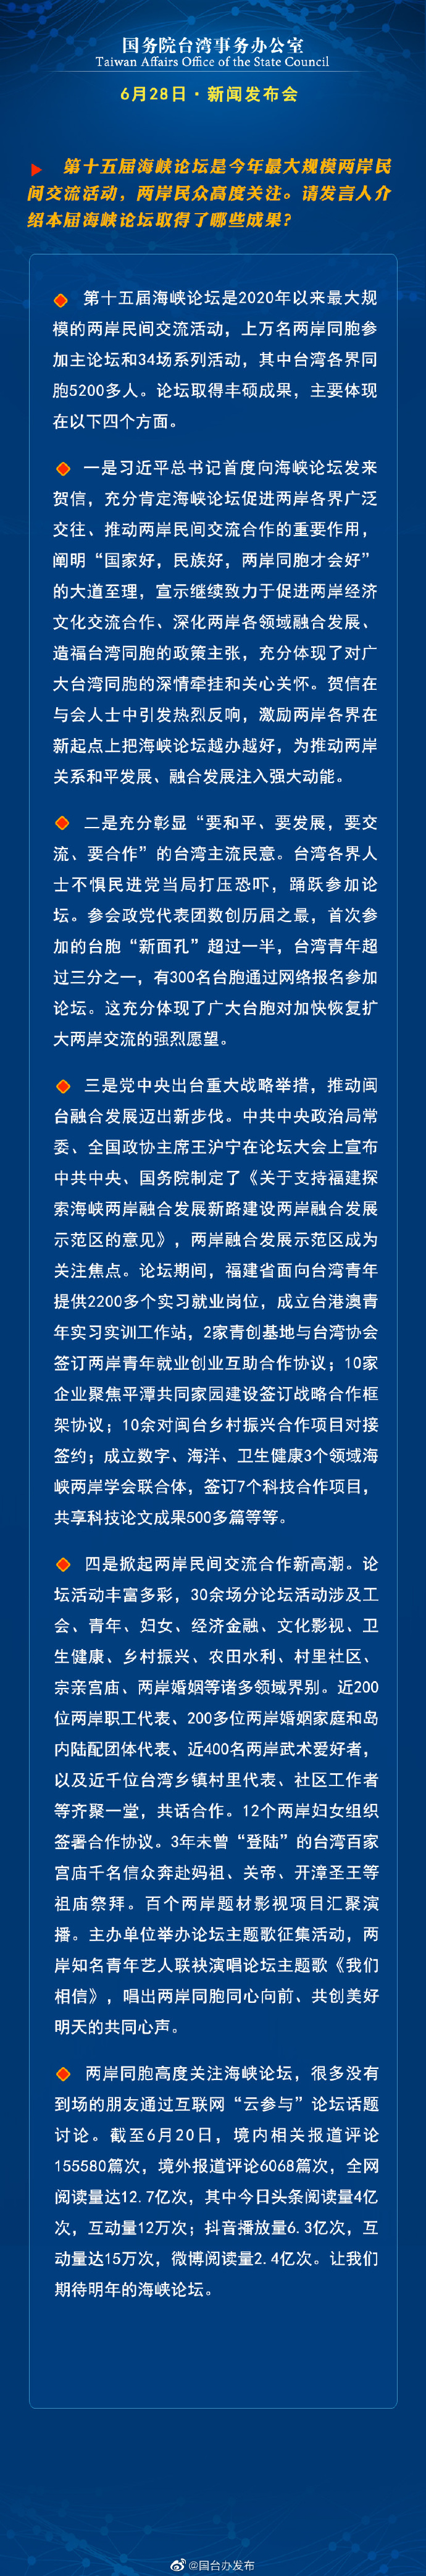 國務院台灣事務辦公室6月28日·新聞發佈會